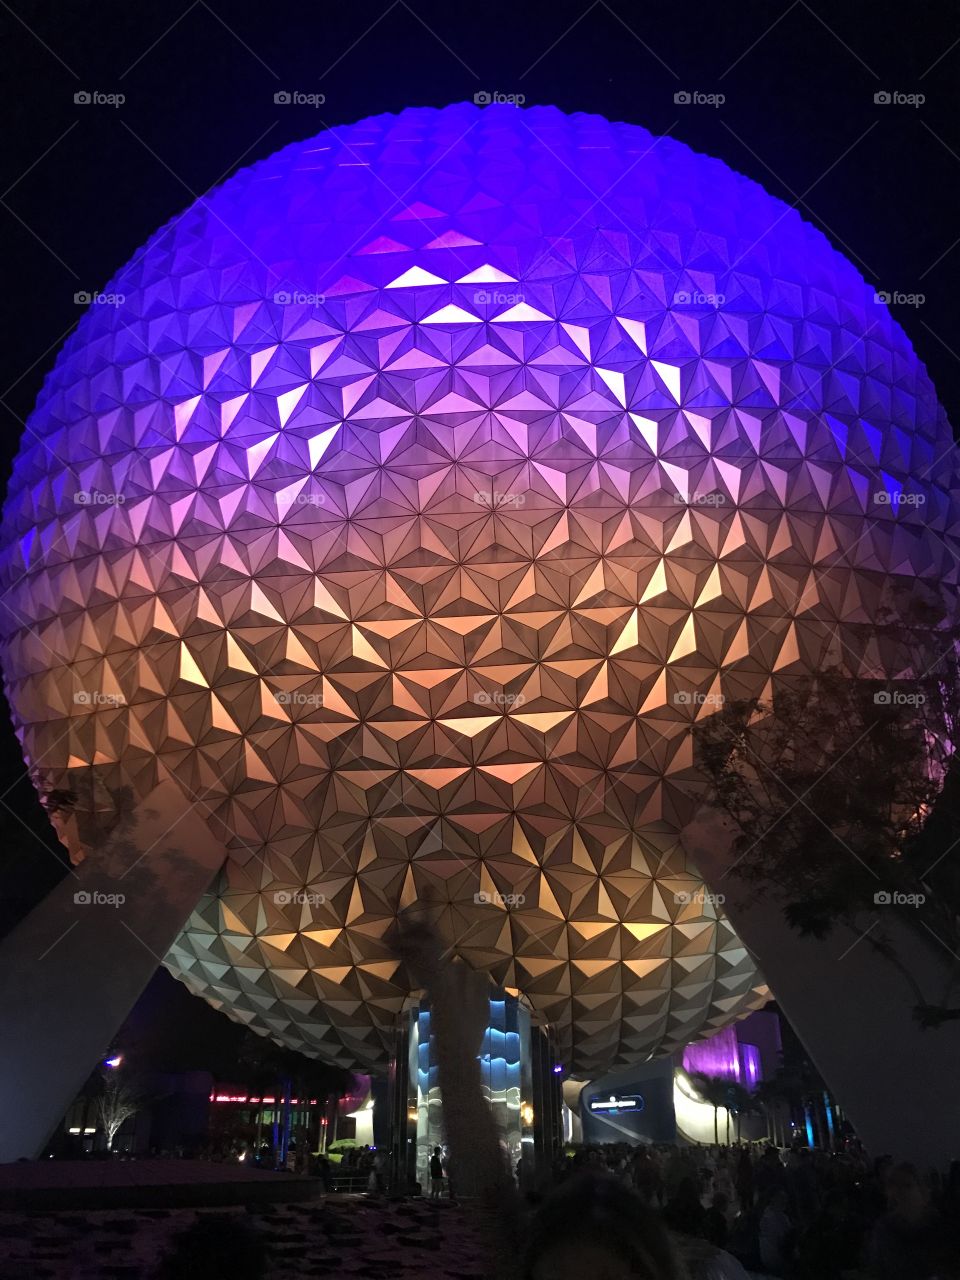 The beautiful Epcot ball at Walt Disney World